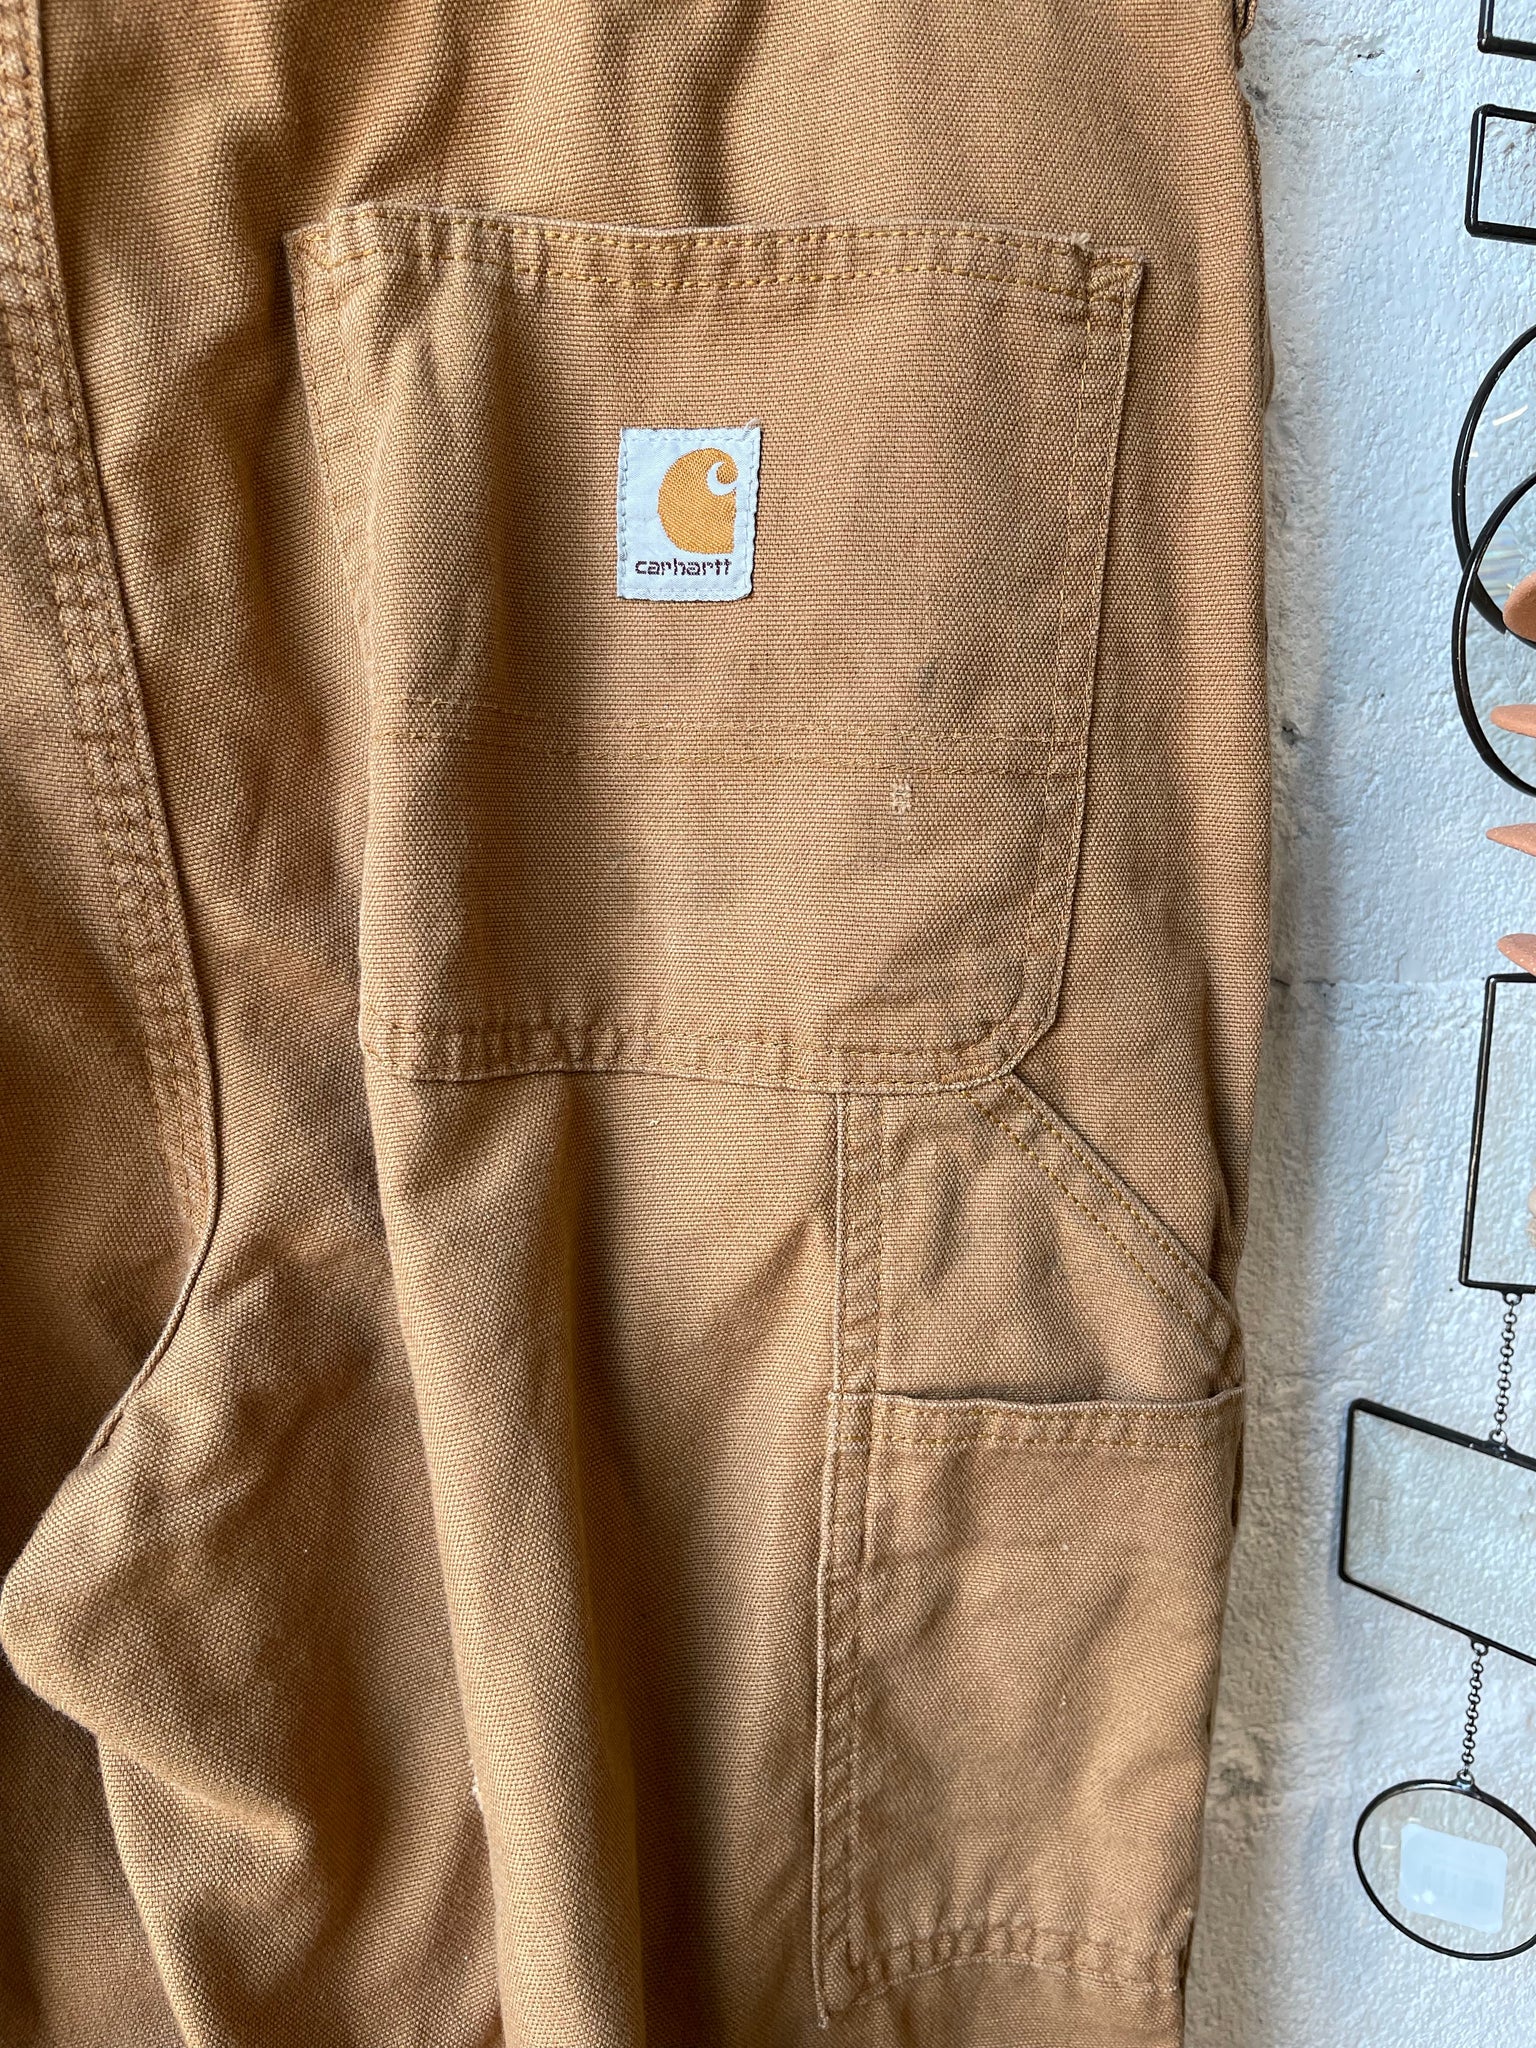 Vintage Carhart Pants